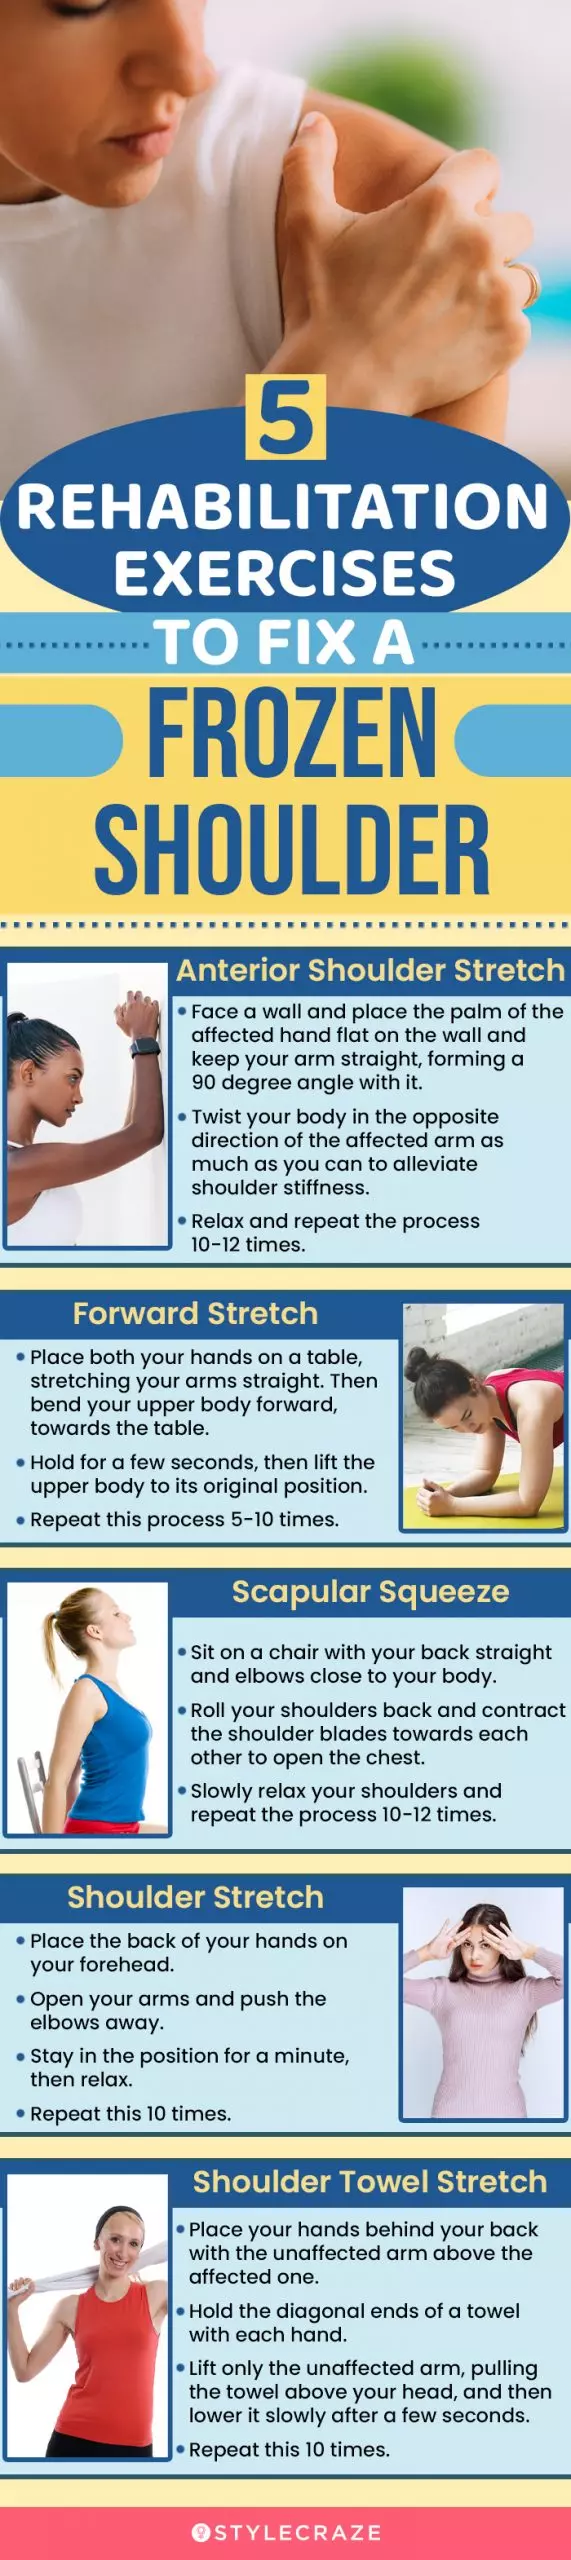 5 rehabilitation exercises to fix a frozen shoulder (infographic)